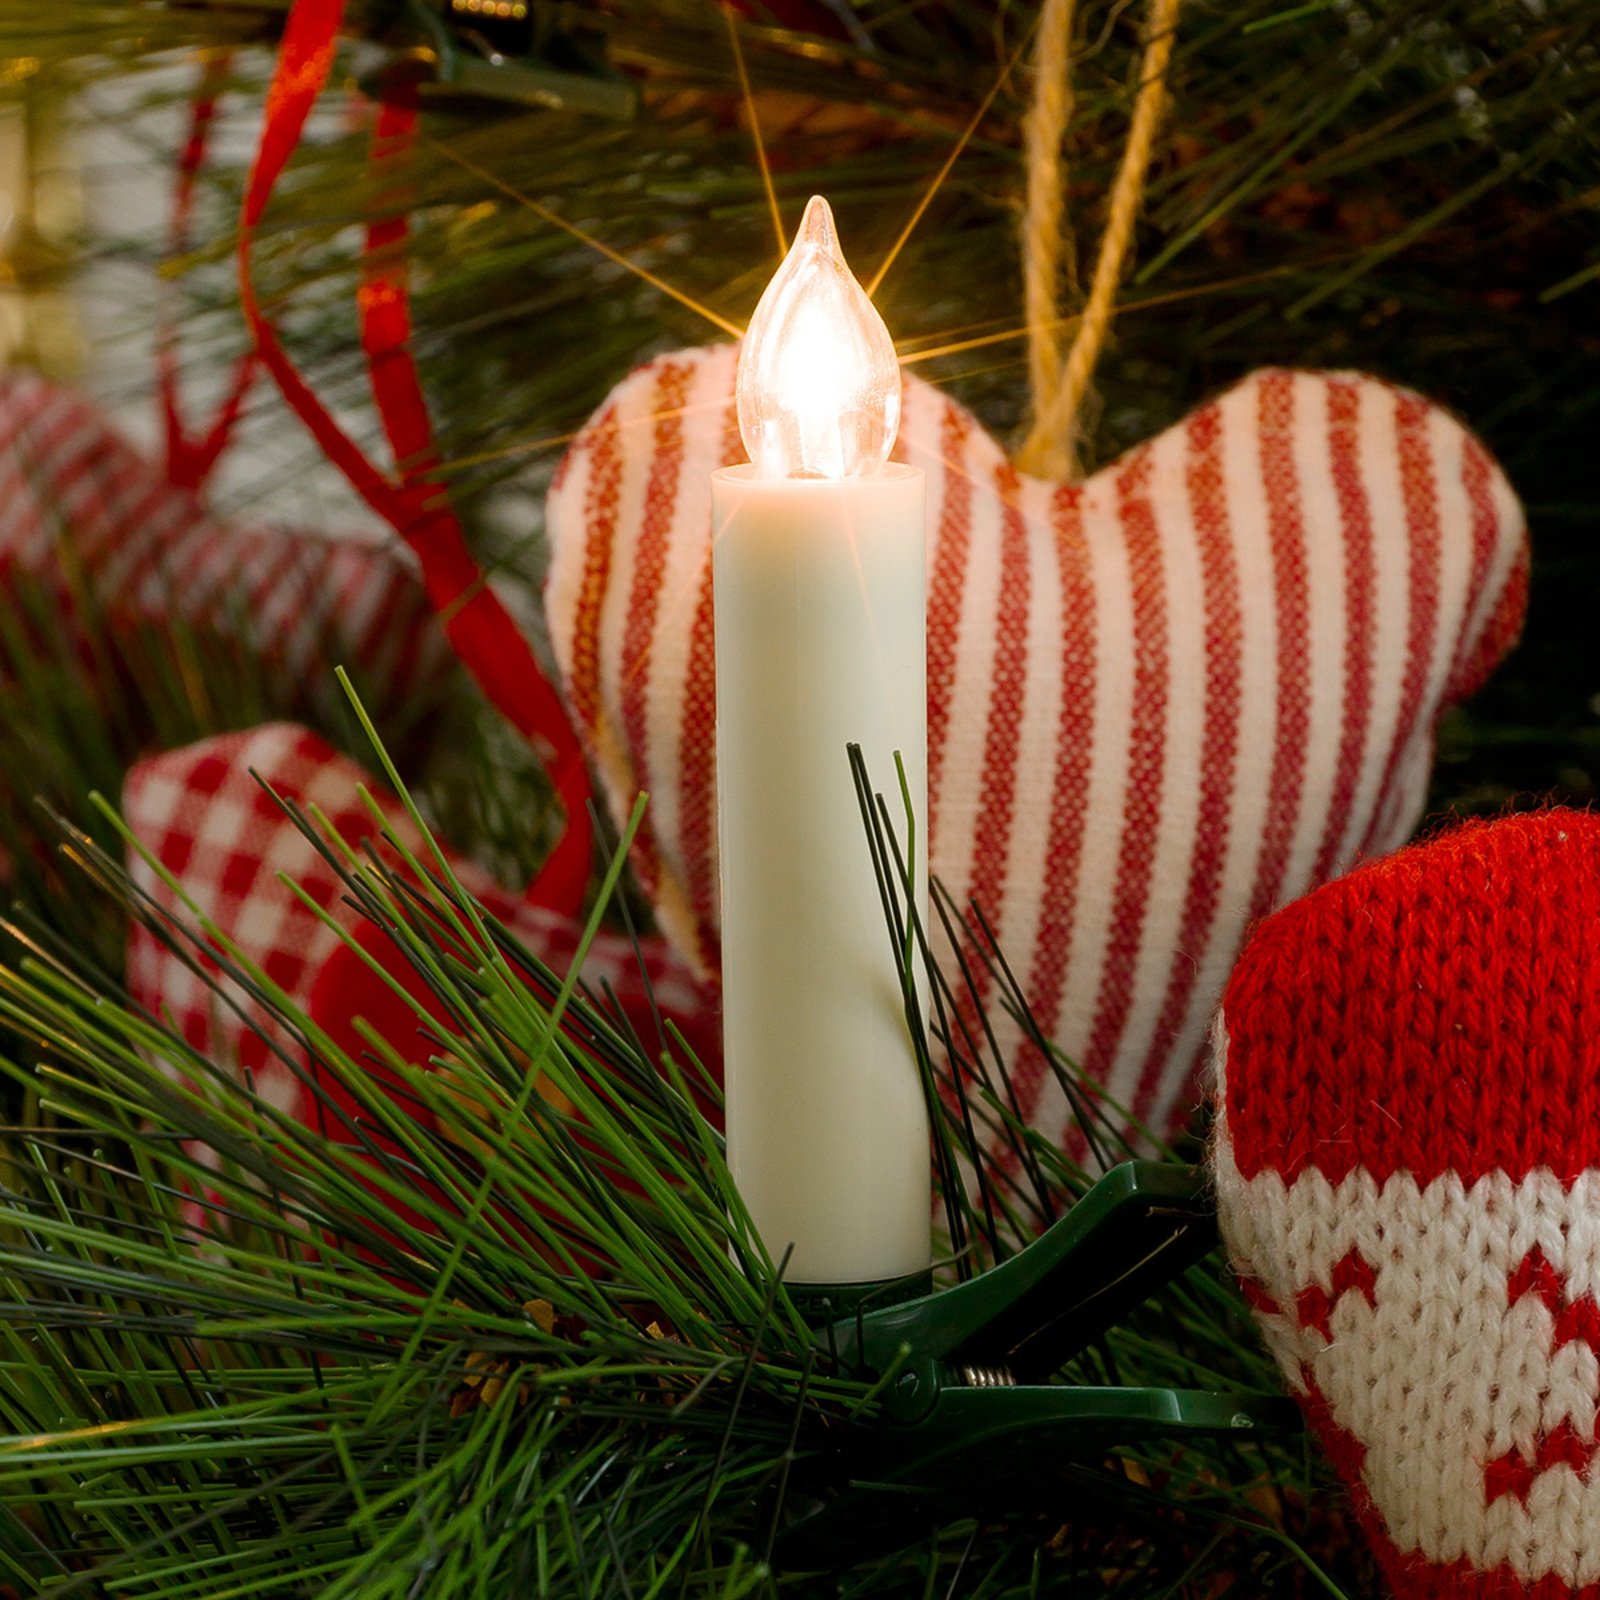 Žiarovky vianočný strom bezdrôtové doplnok 8cm 5pl